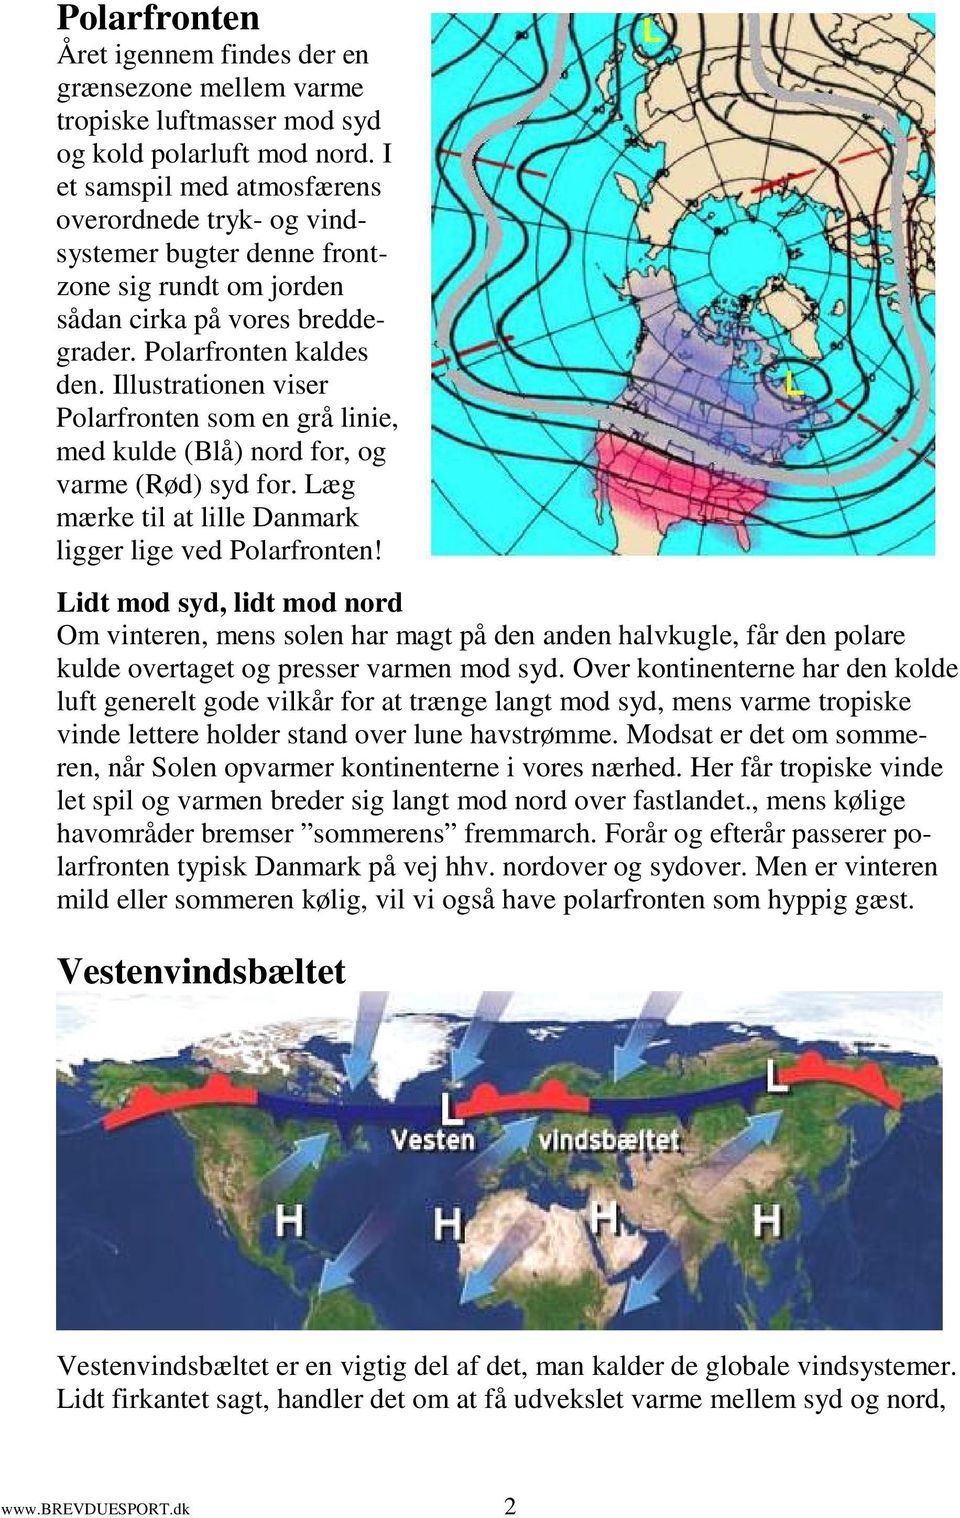 Illustrationen viser Polarfronten som en grå linie, med kulde (Blå) nord for, og varme (Rød) syd for. Læg mærke til at lille Danmark ligger lige ved Polarfronten!